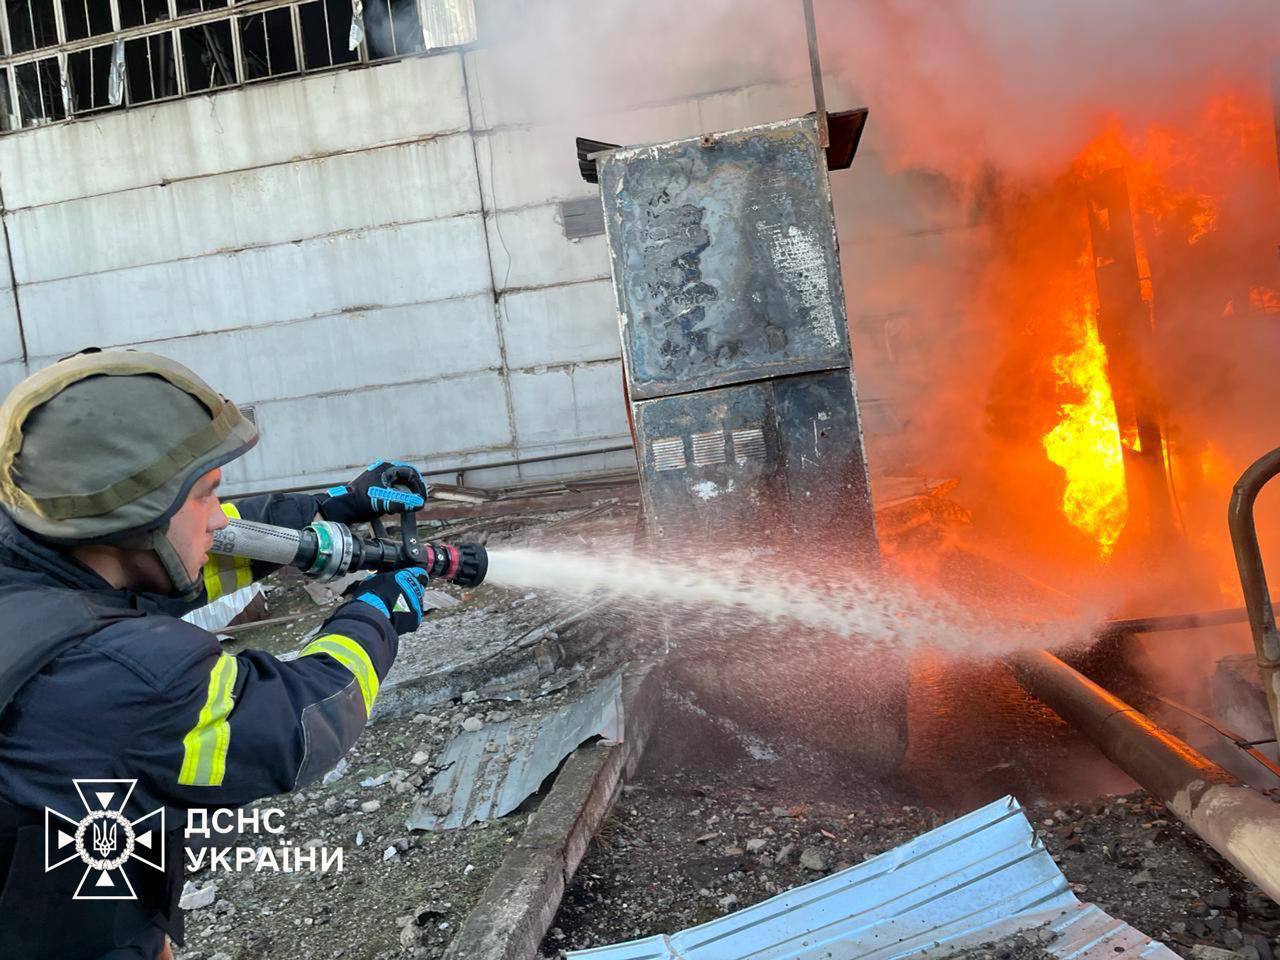 Масована атака росії по Україні: під удар потрапили два газових сховища  